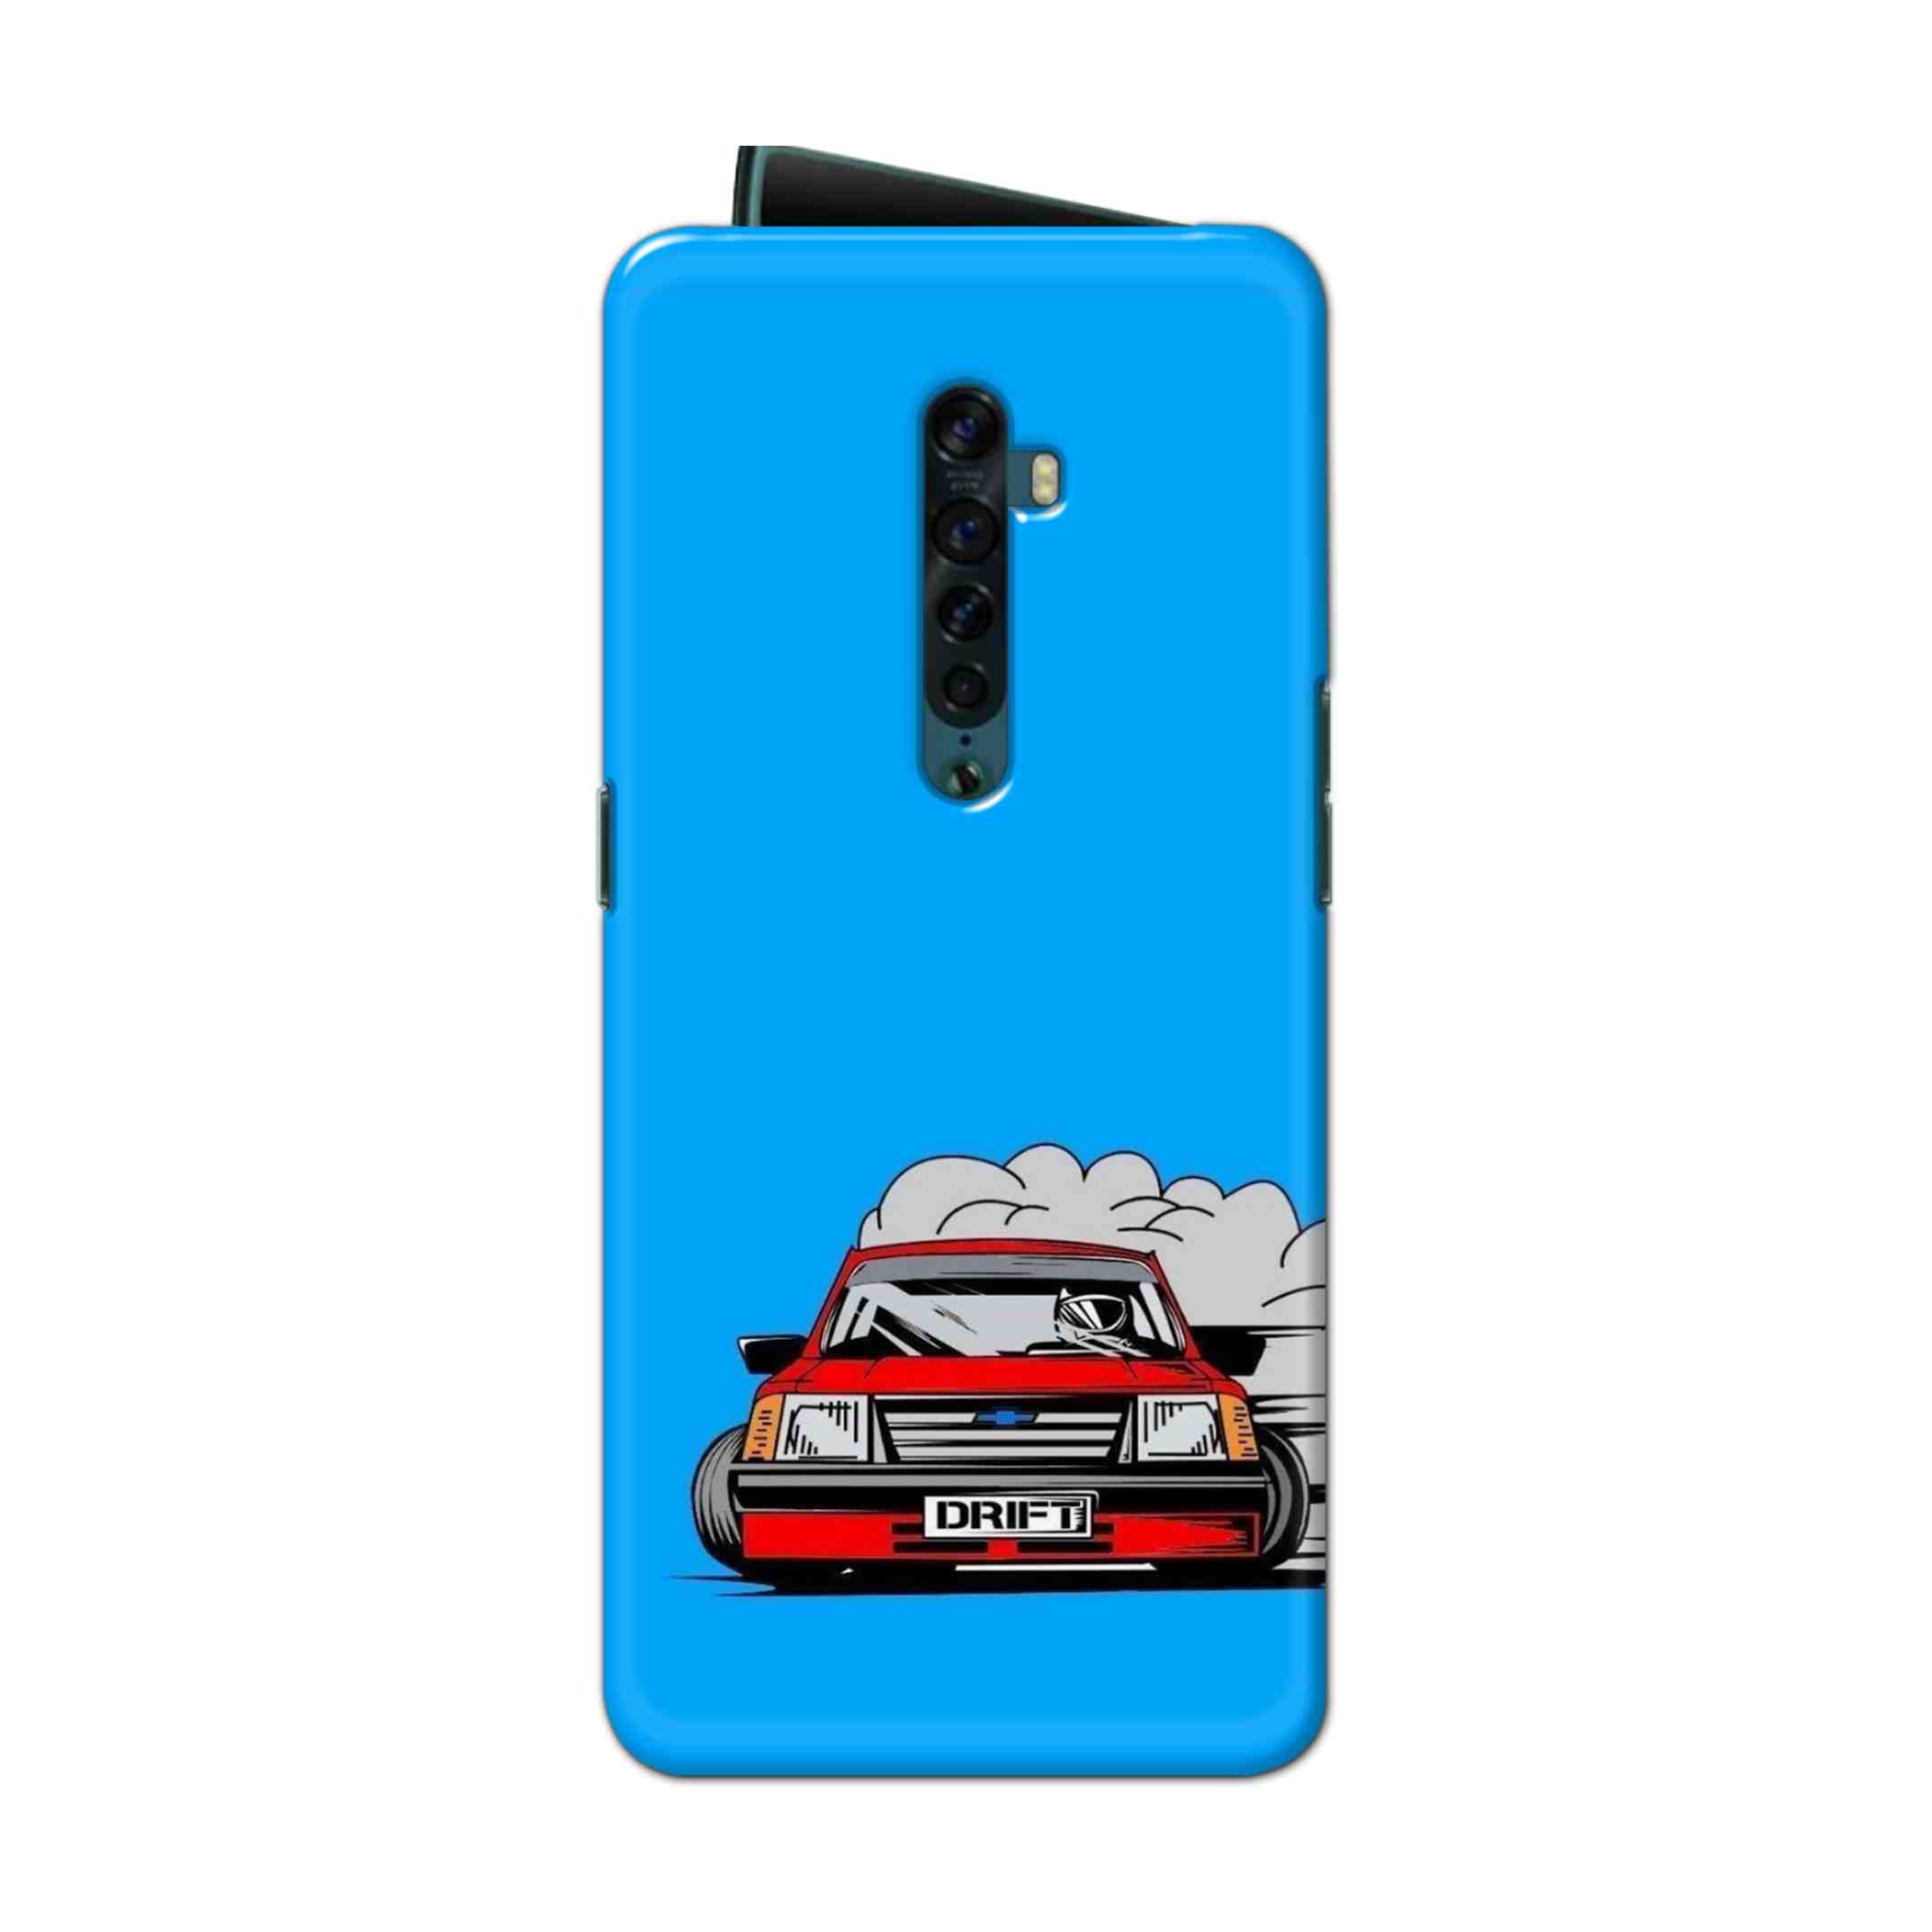 Buy Drift Hard Back Mobile Phone Case Cover For Oppo Reno 2 Online